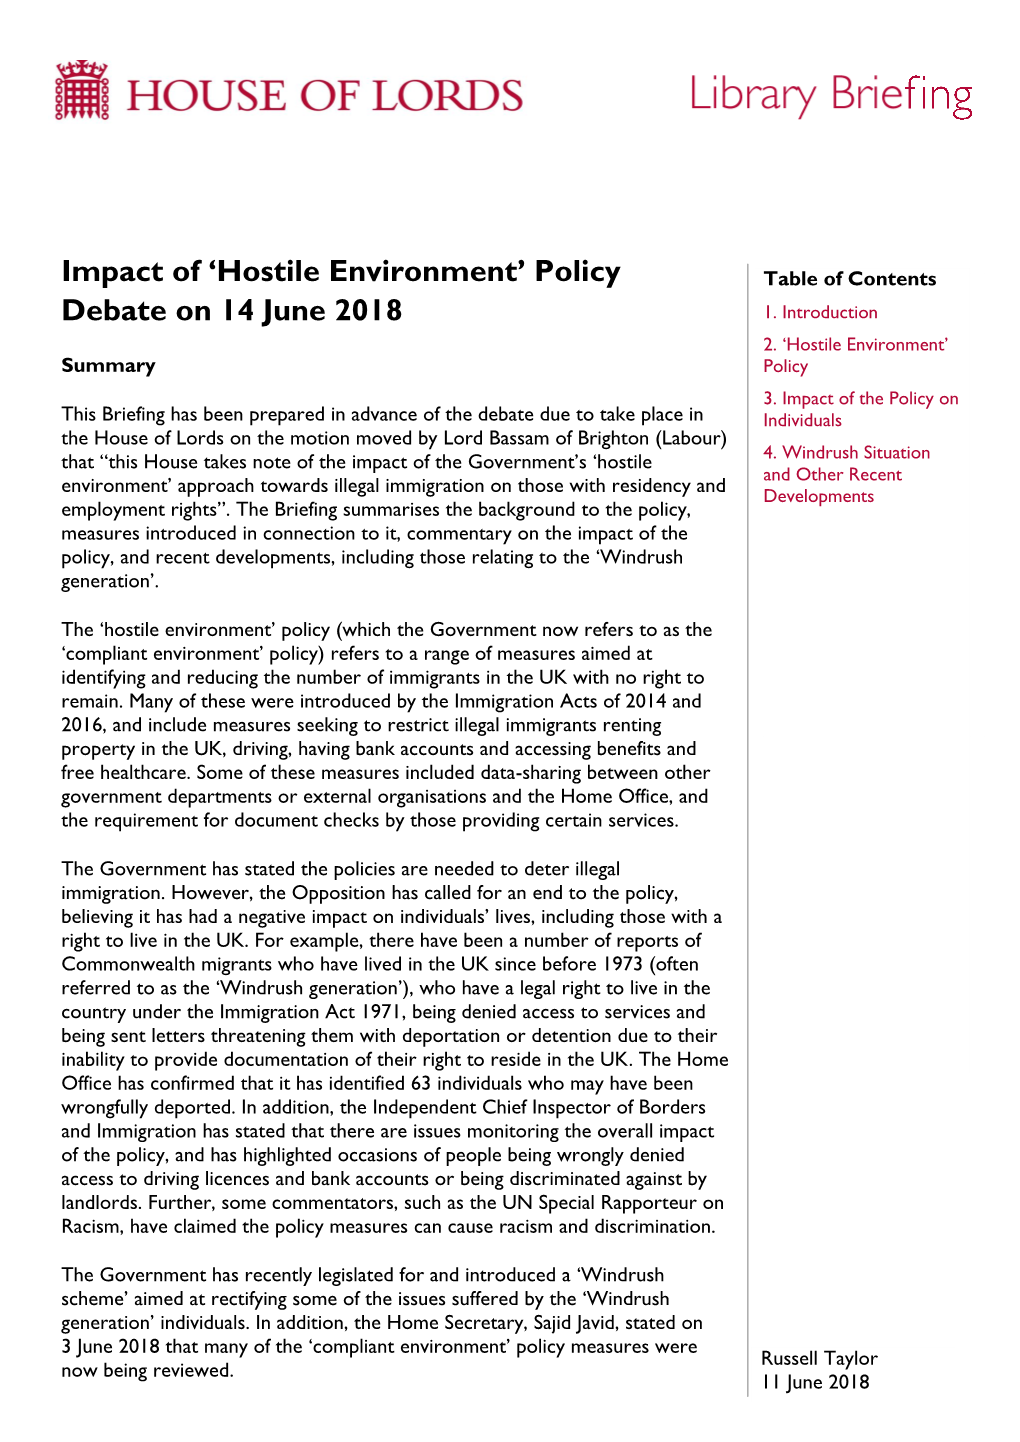 Impact of 'Hostile Environment' Policy Debate on 14 June 2018